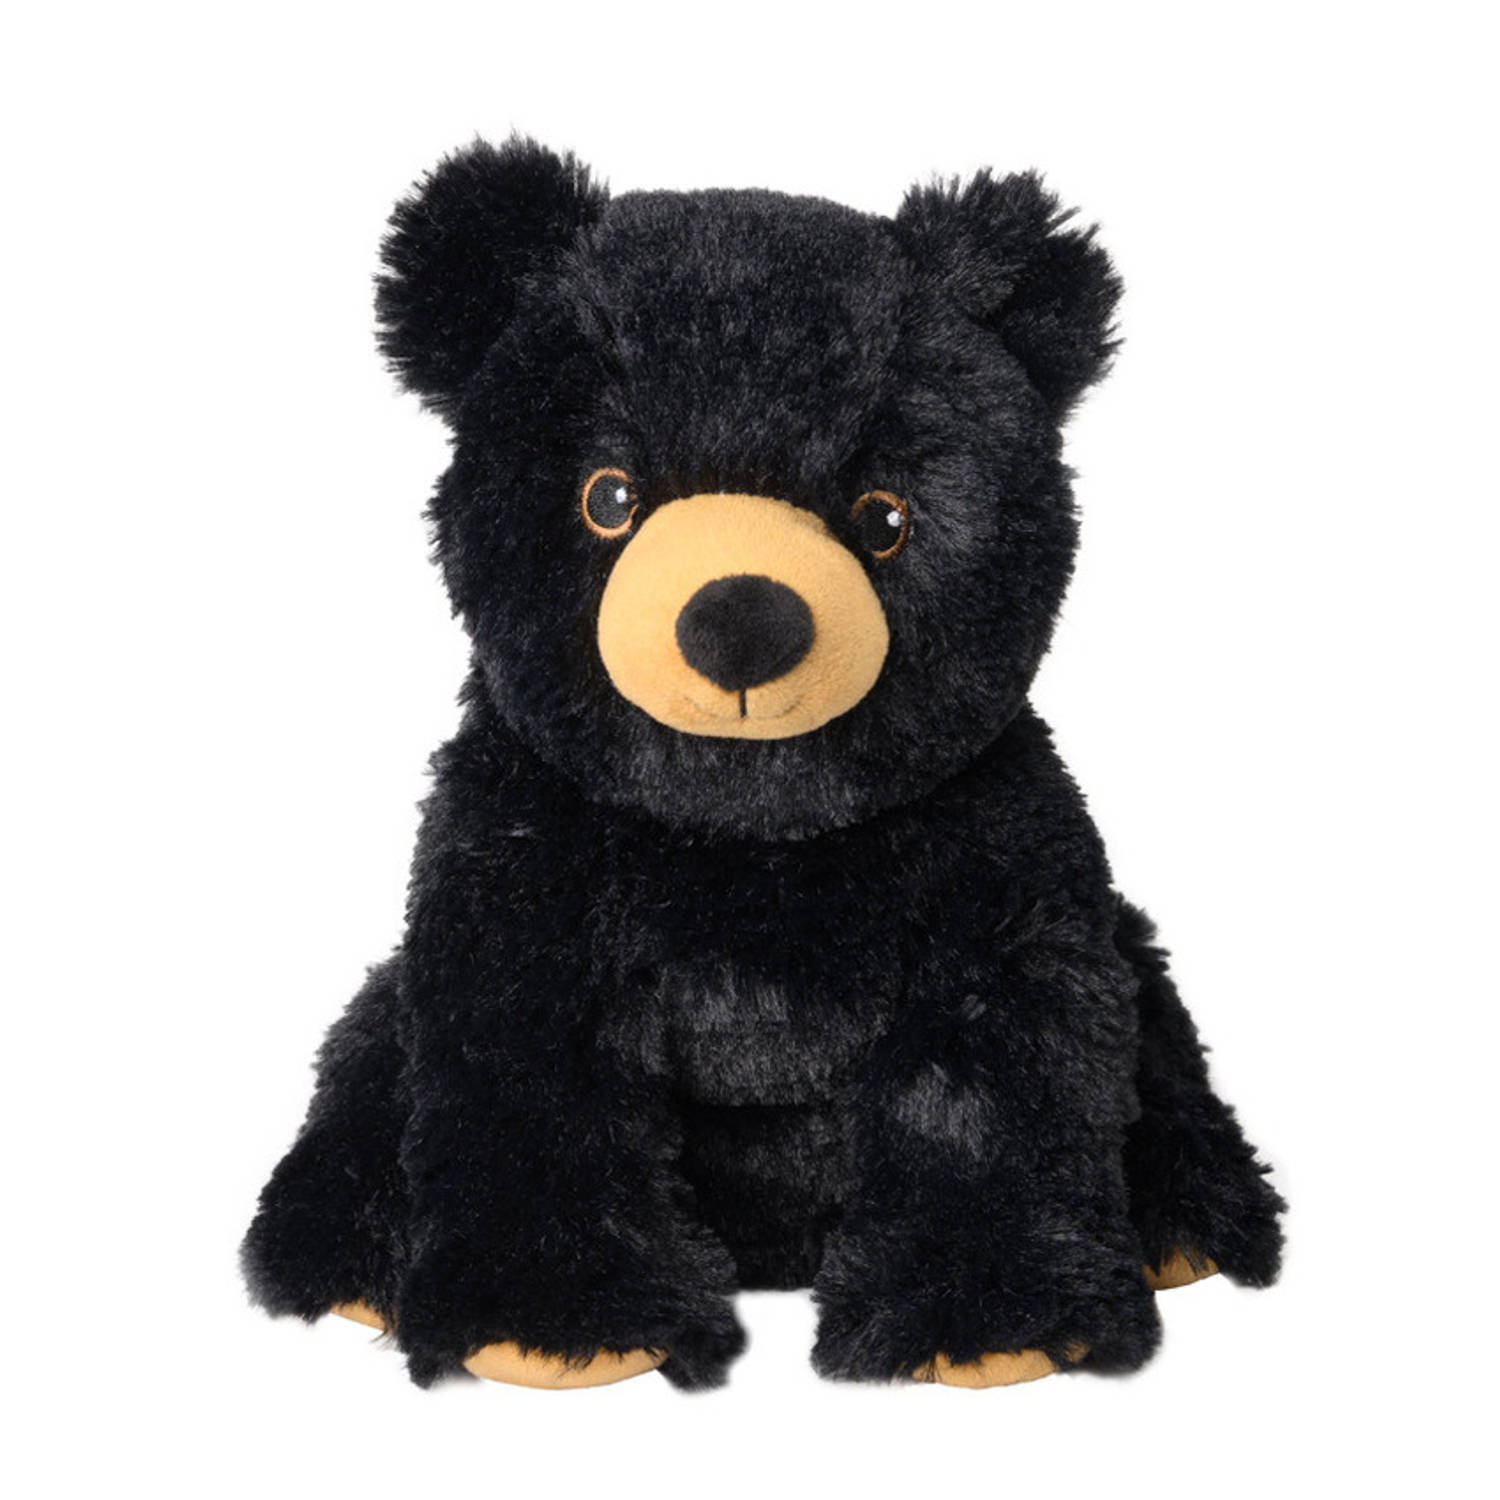 Warmies Warmte/magnetron opwarm knuffel zwarte beer - Dieren cadeau artikelen voor kinderen - Heatpack